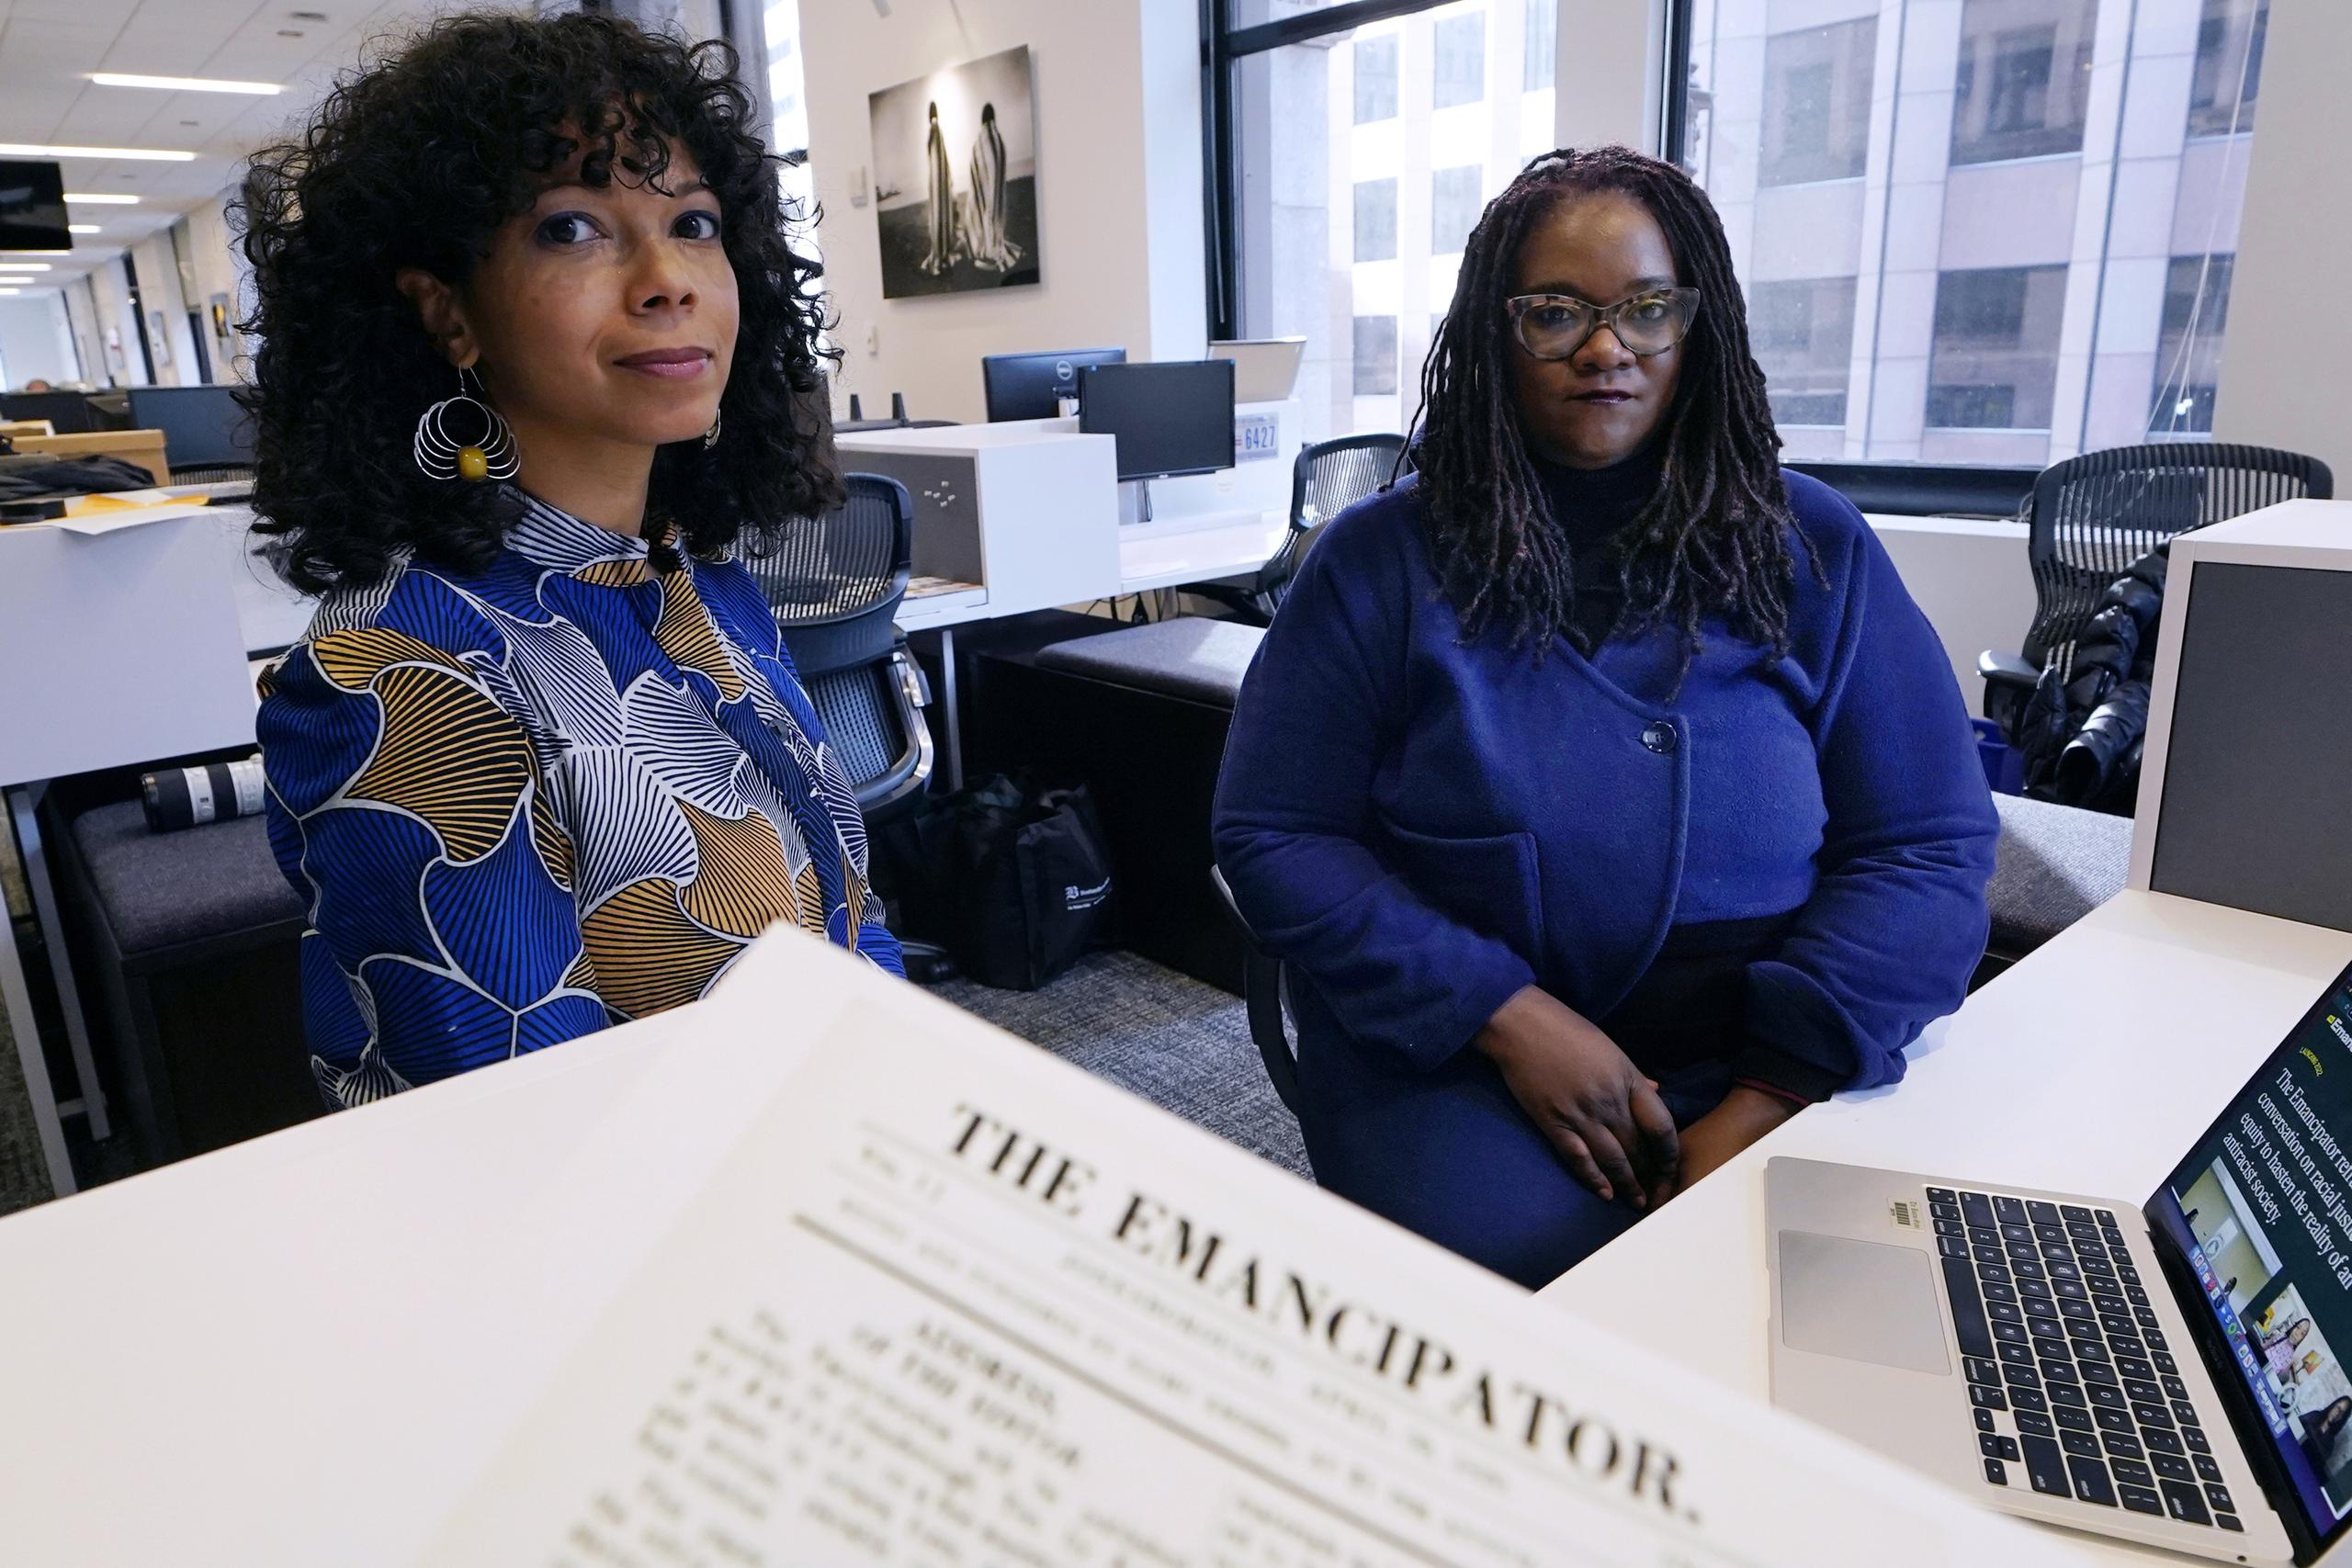 Amber Payne, izquierda, y Deborah Douglas, en la derecha, son las codirectoras de la nueva publicación online "The Emancipator" (El emancipador), que estará disponible en la sección de opinión del diario Boston Globe.